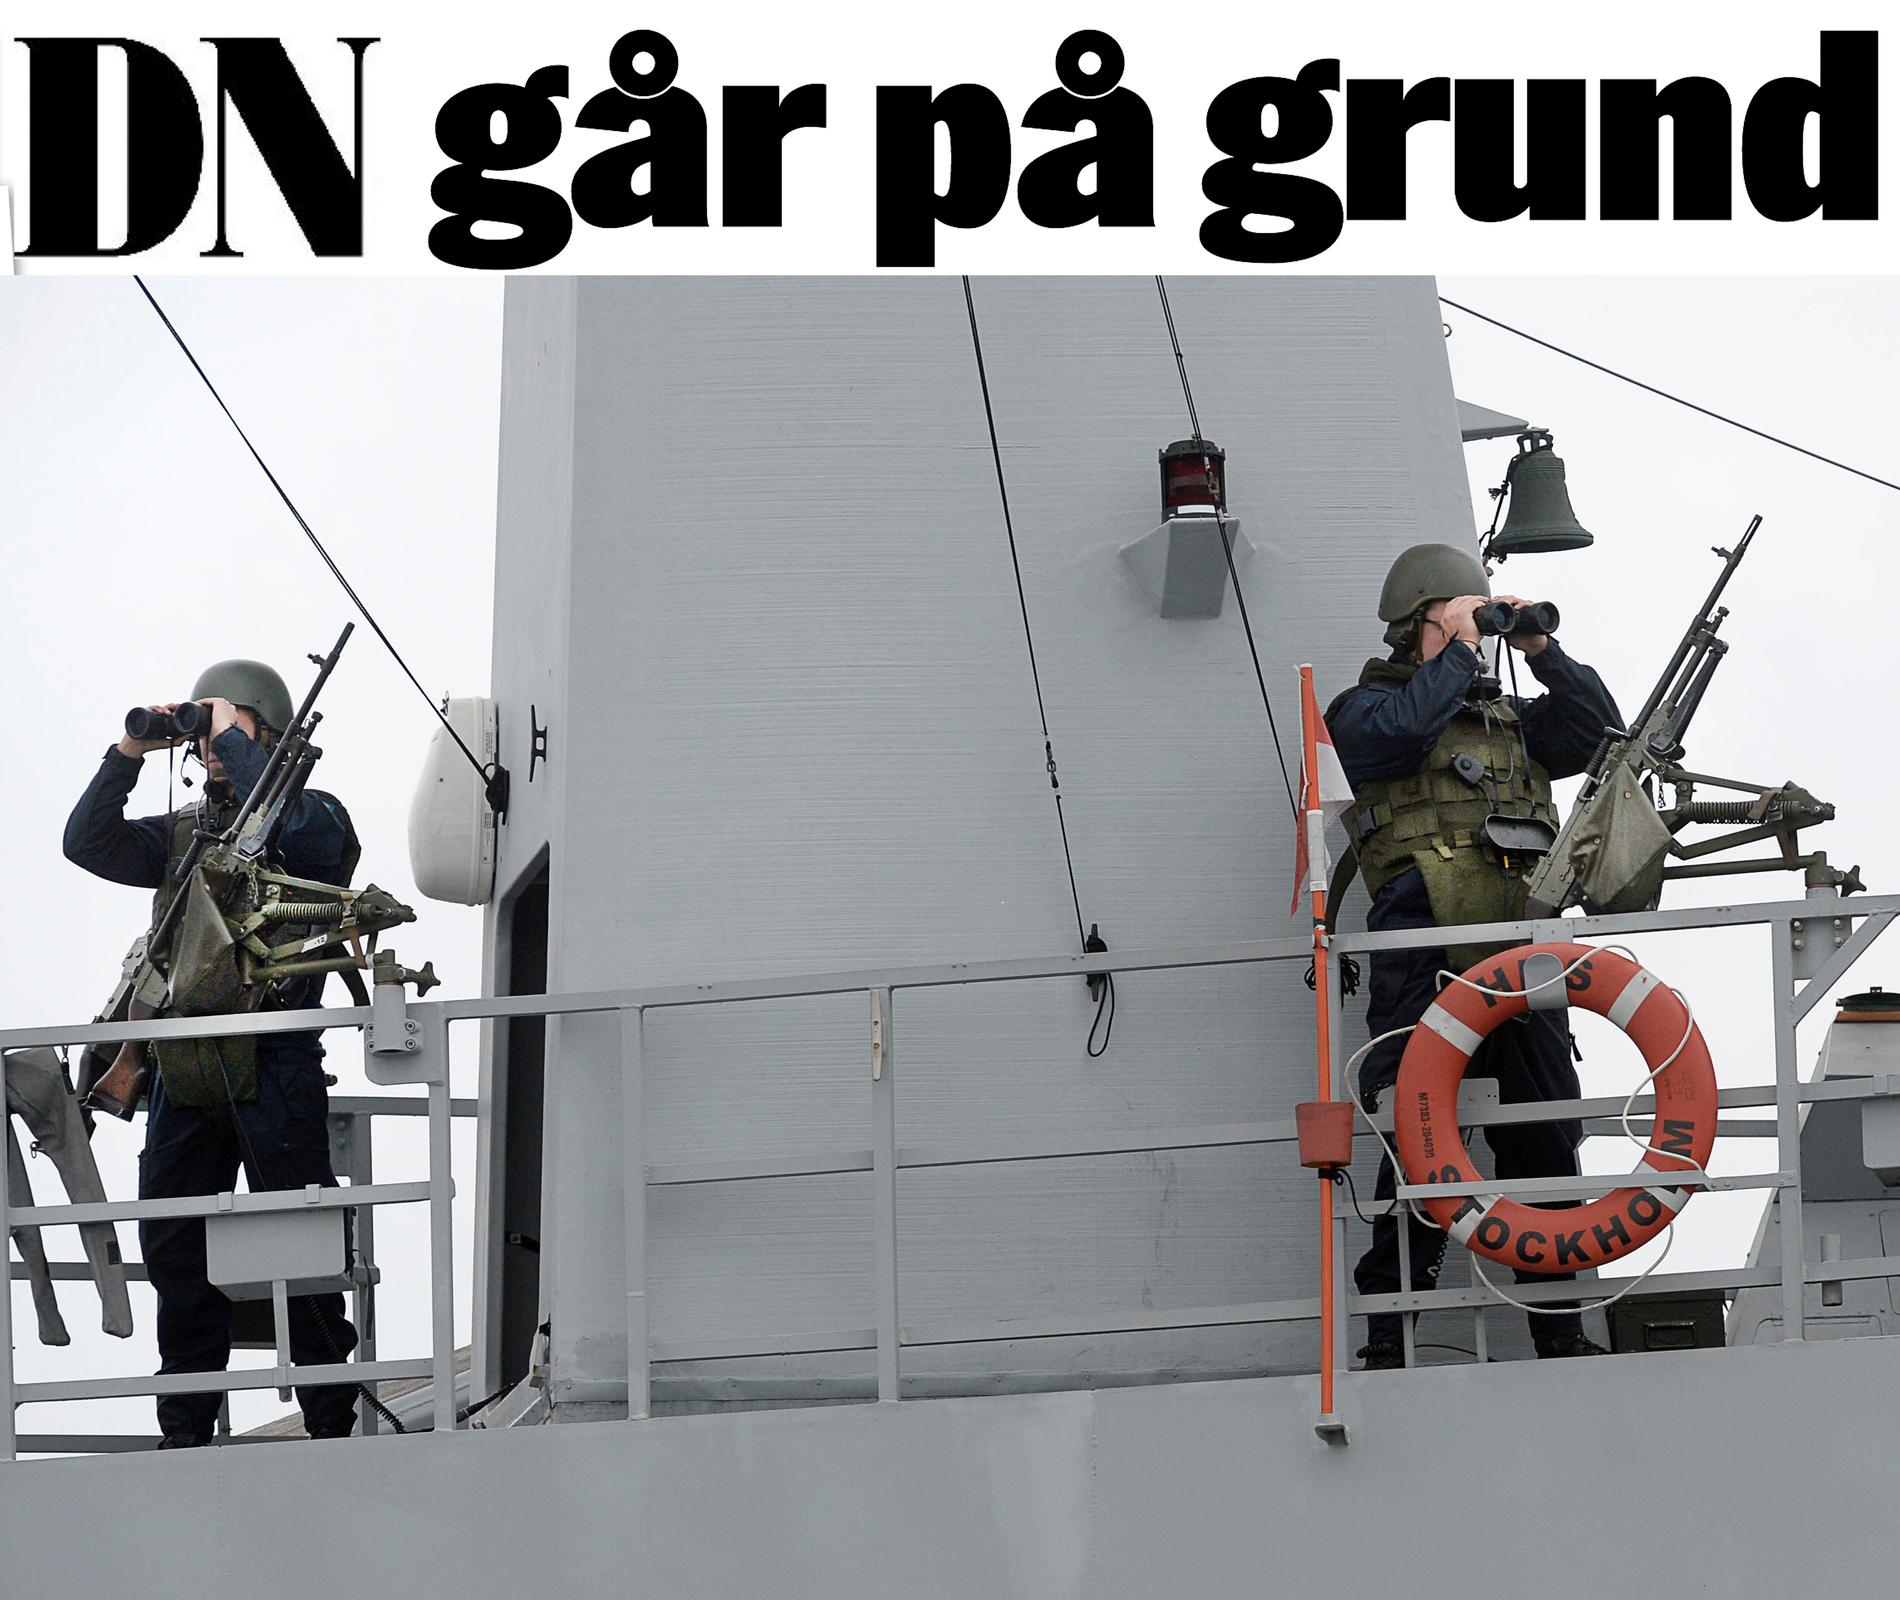 UBÅTSJAKTEN Svensk militär spanar efter främmande ubåtar i Stockholms skärgård förra året. I januari därpå rapporterade Dagens Nyheter om ytterligare en ubåtsobservation. ”Ett ogenomtänkt publiceringsbeslut”, skriver Mattias Göransson.